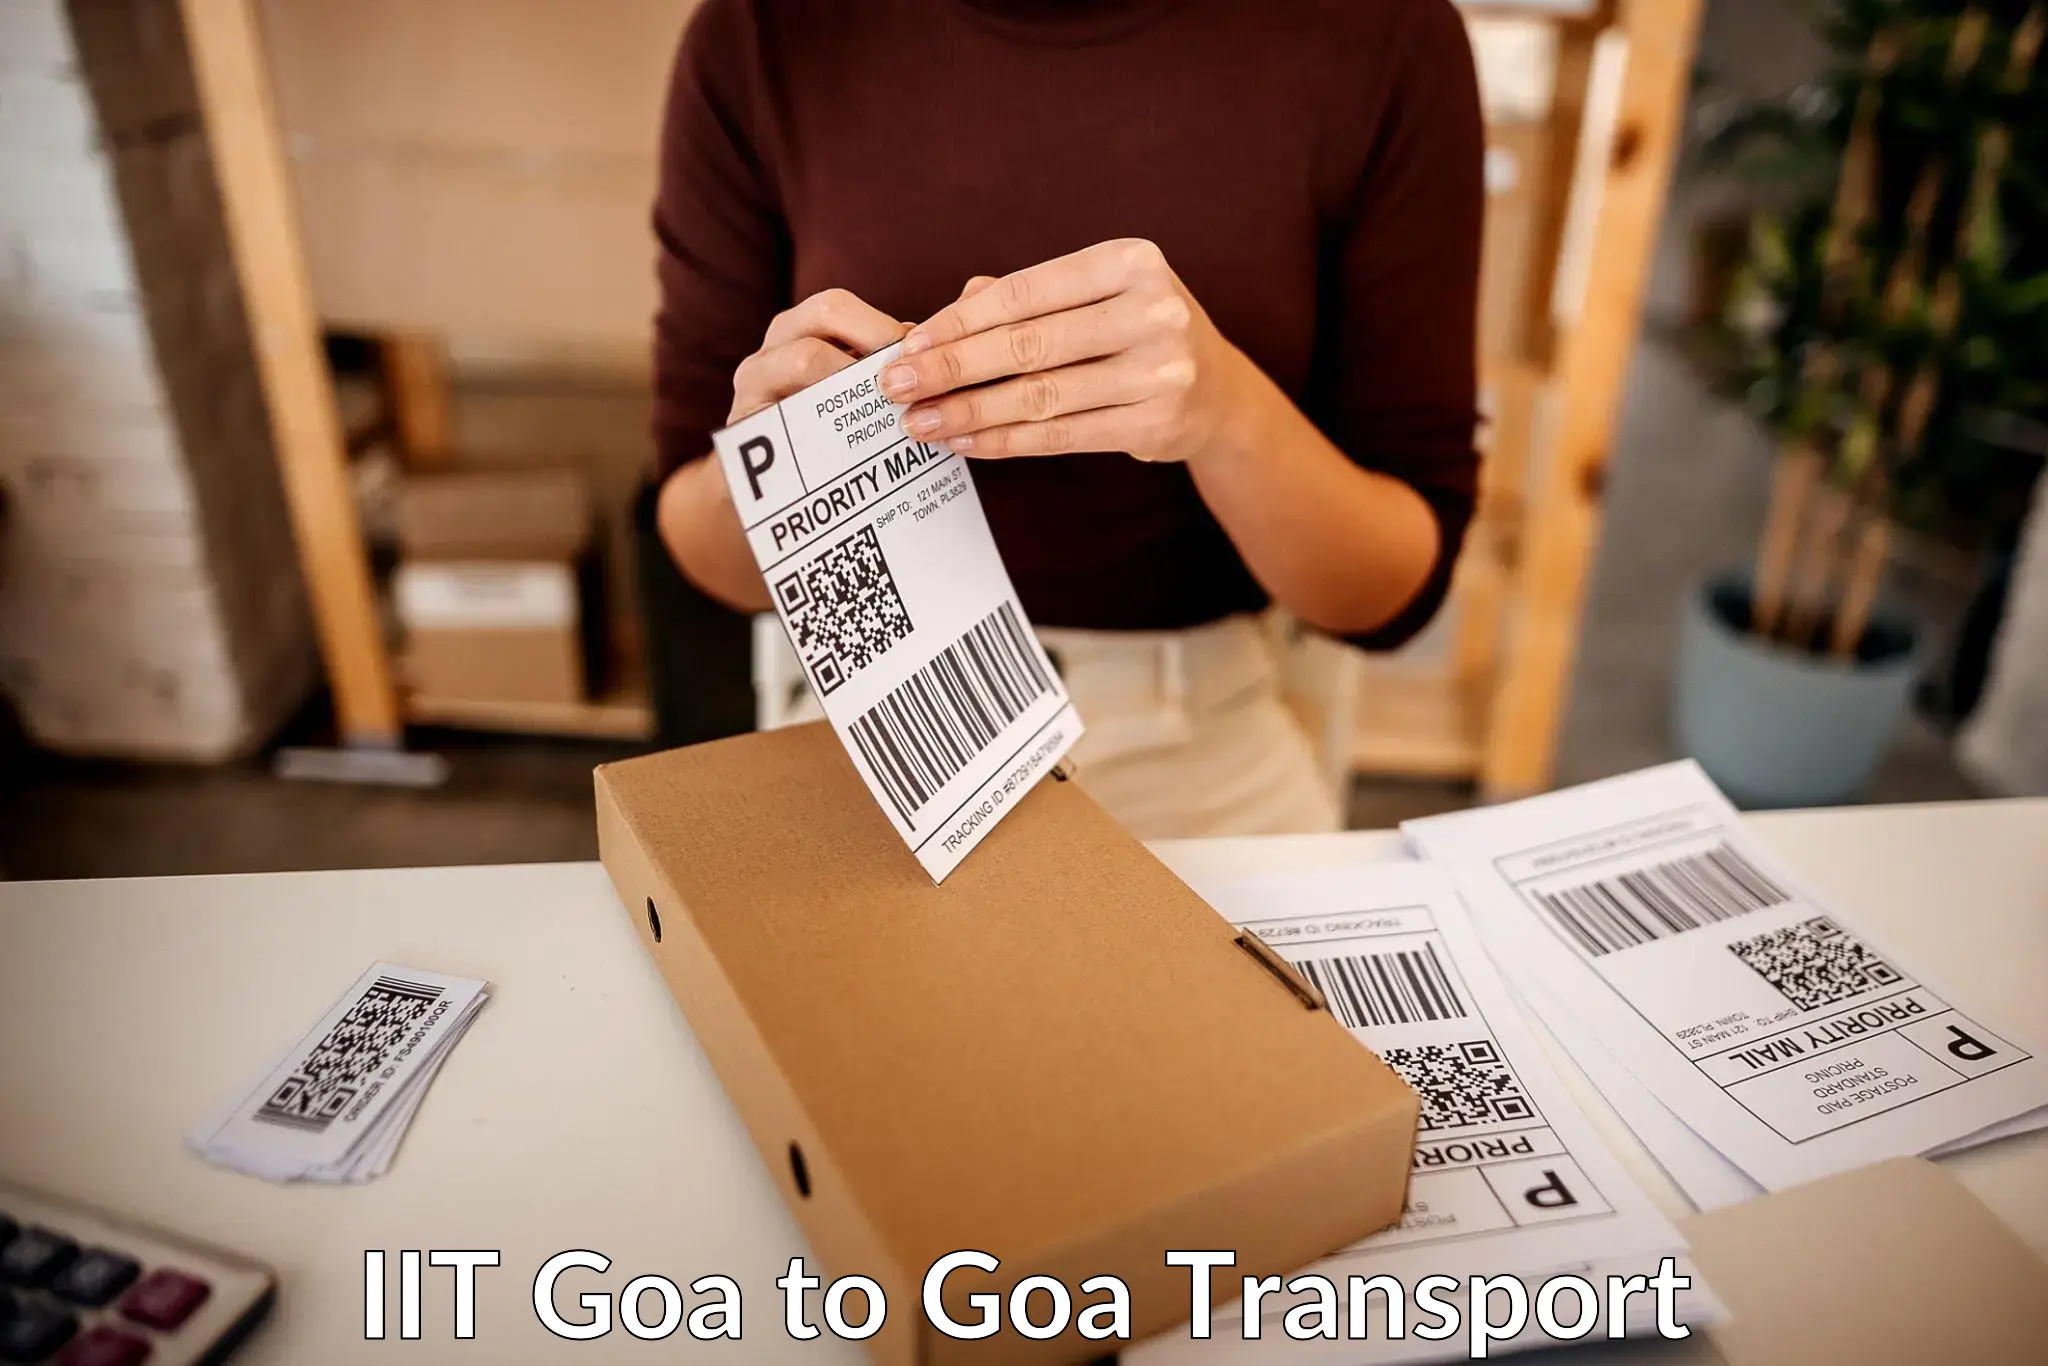 Online transport service IIT Goa to Panaji